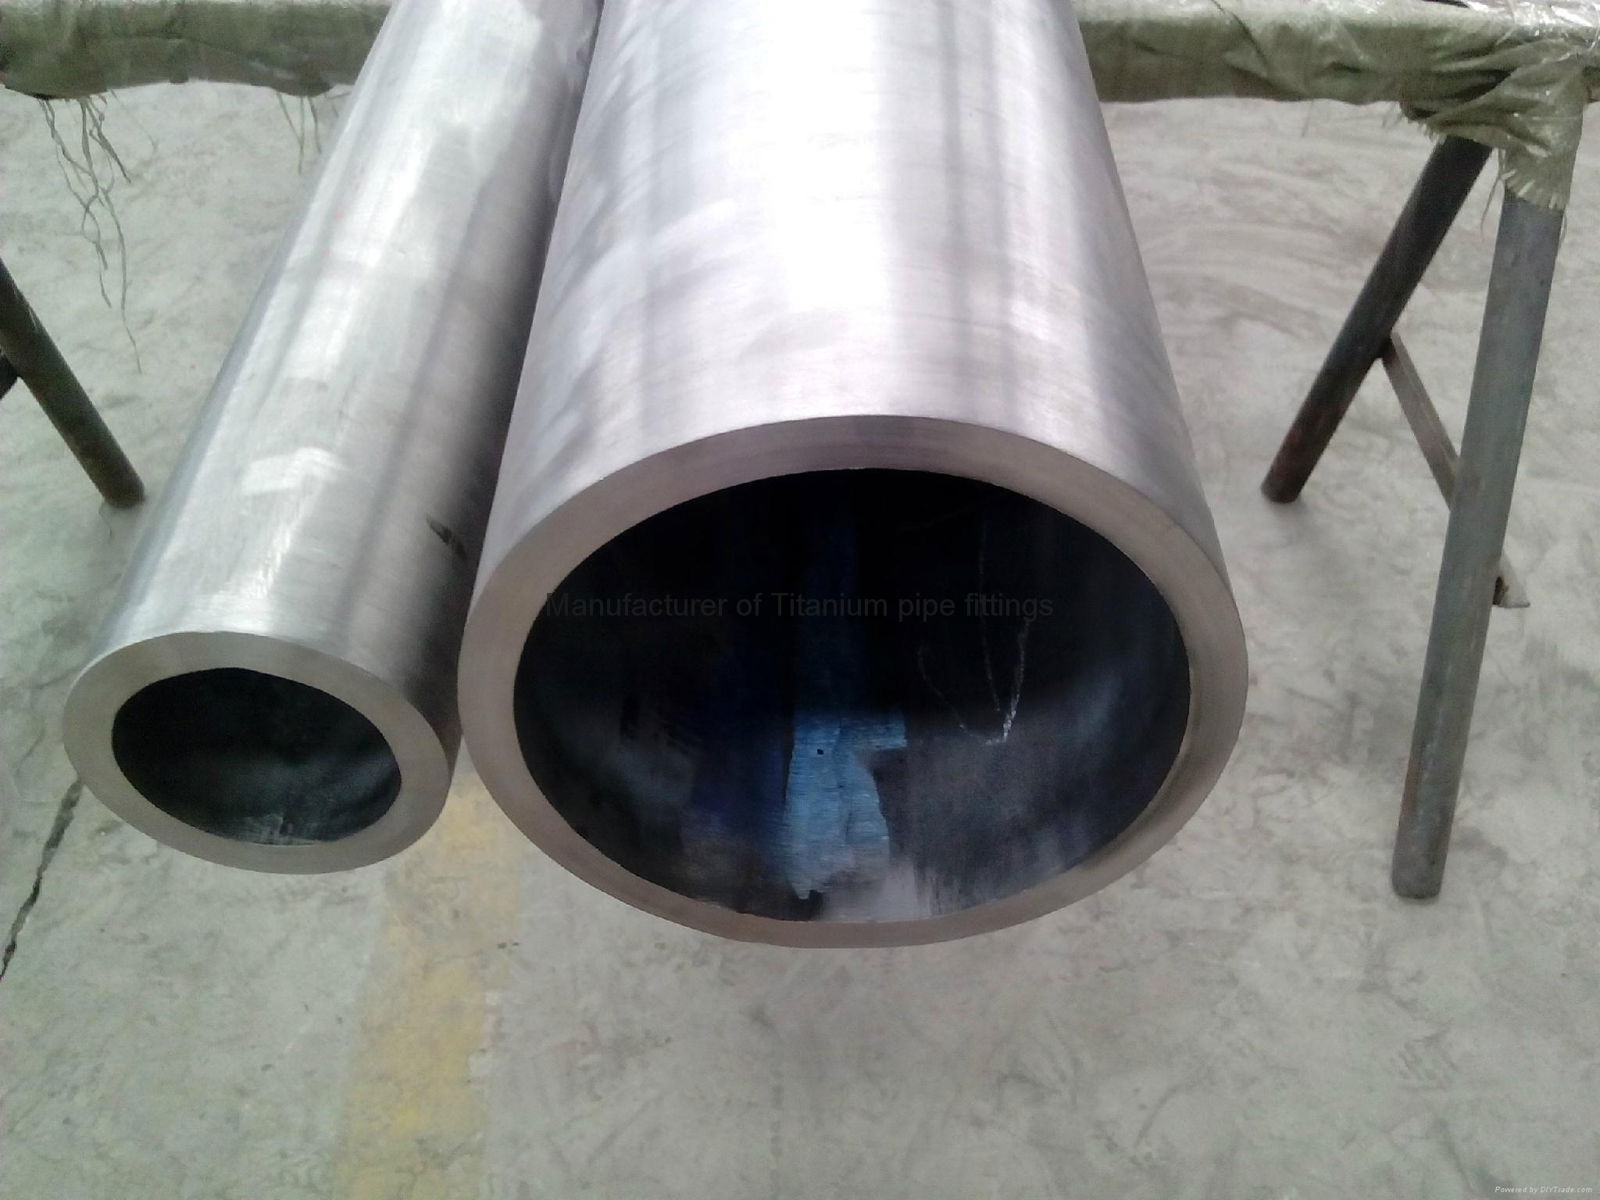 Titanium welding tube /pipe